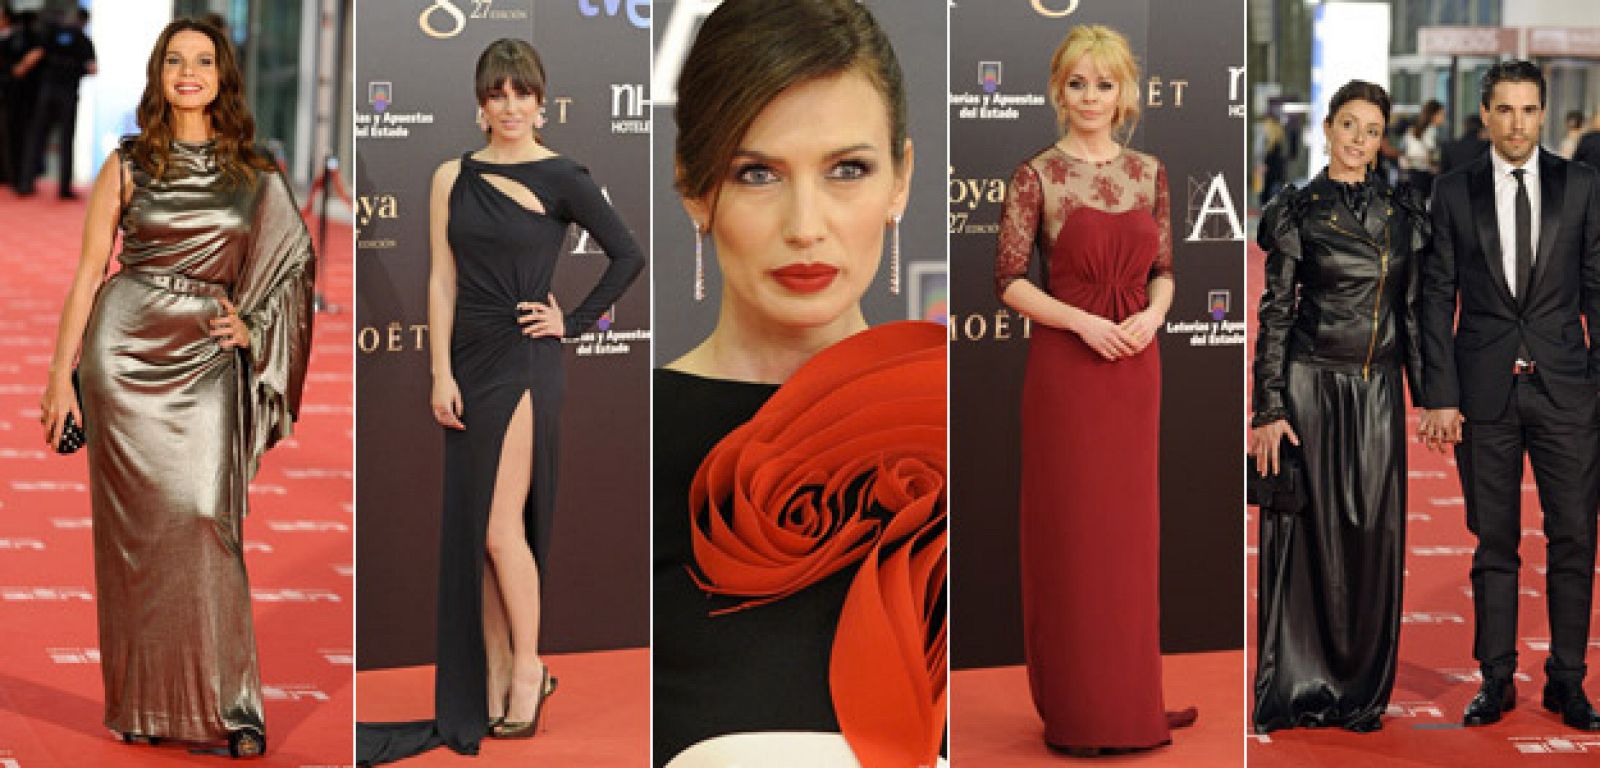 La prensa especializada mira con lupa los estilismos de las actrices y actores en la alfombra roja.